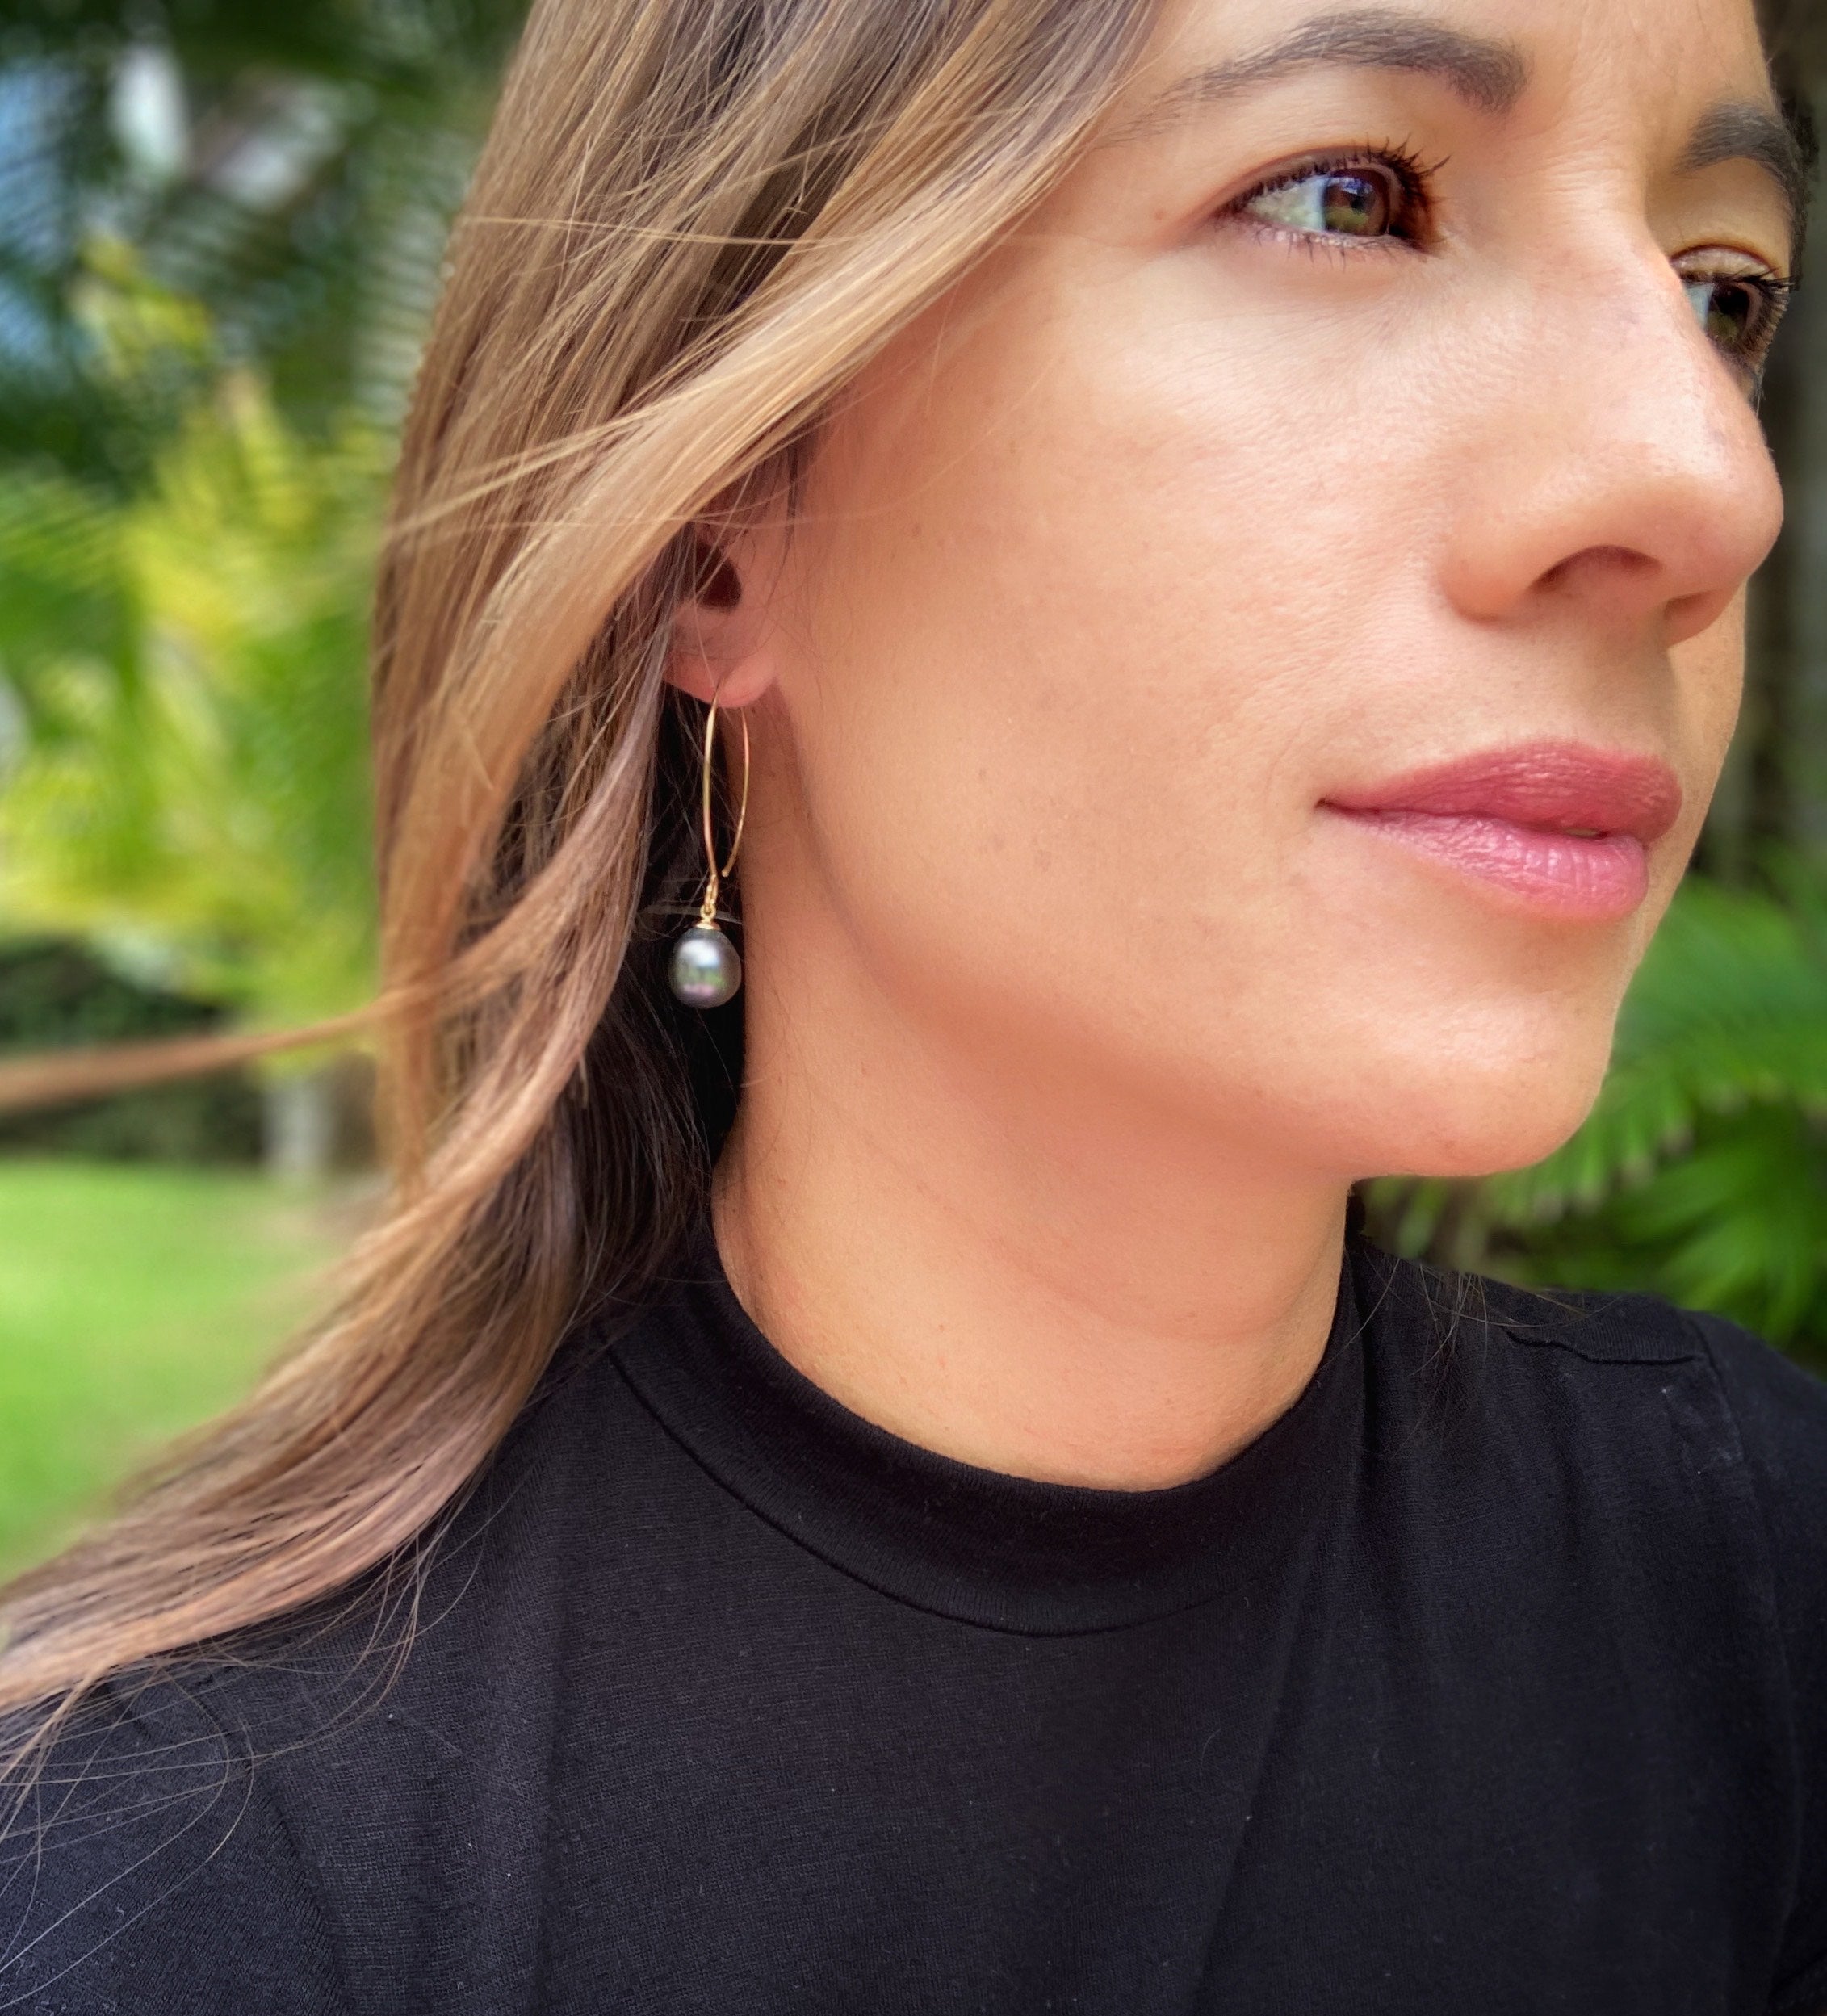 Tahitian Pearl earrings, island jewelry, handcrafted in Hawaii, Hawaiian jewelry earrings, grey pearl earrings, Hawaiian design gold earrings, Hawaiian design silver earrings 